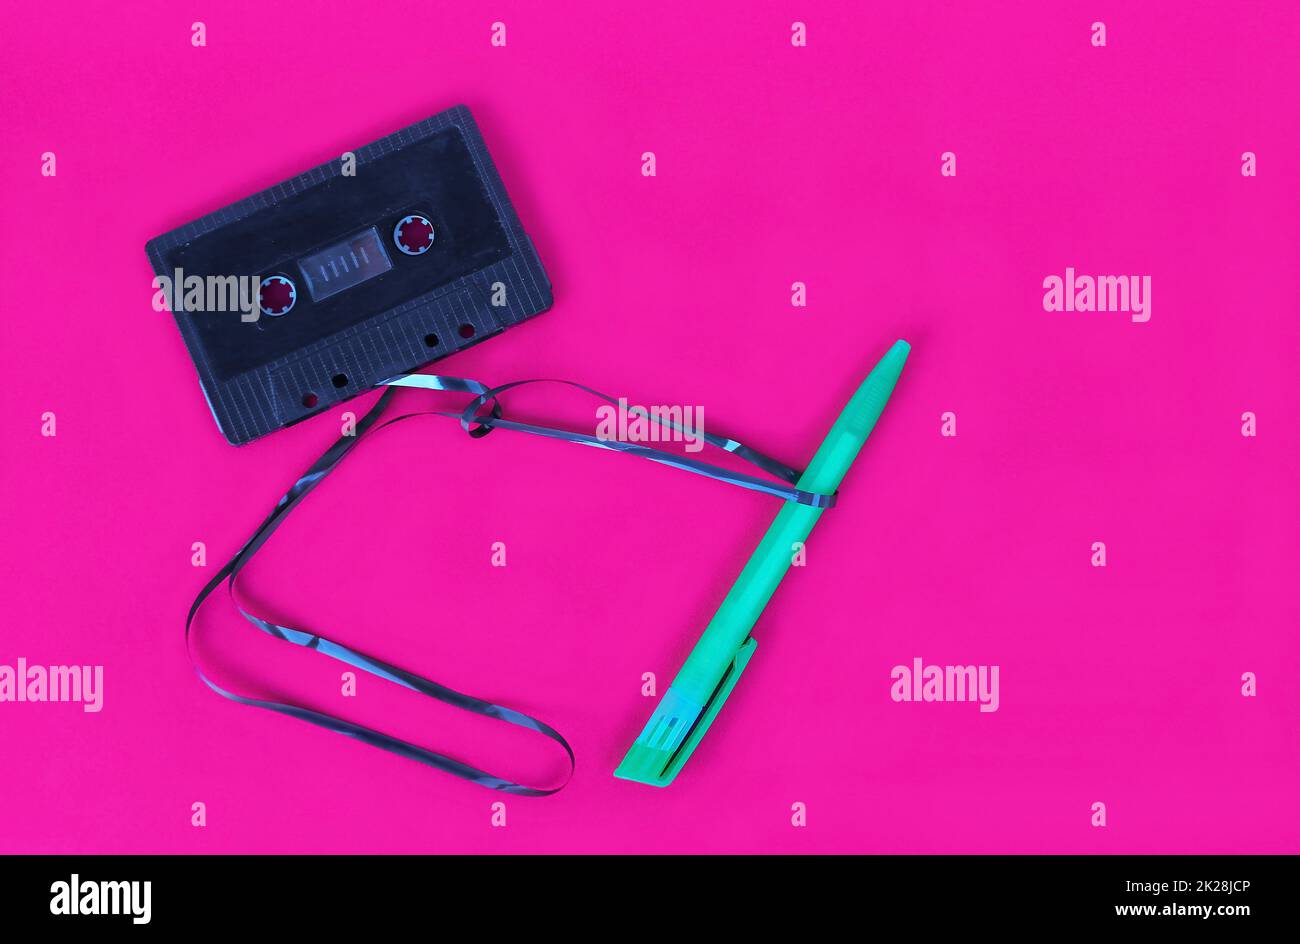 Dans le 90s, vous aviez besoin d'un stylo pour enrouler une bande cassée d'une cassette de musique Banque D'Images